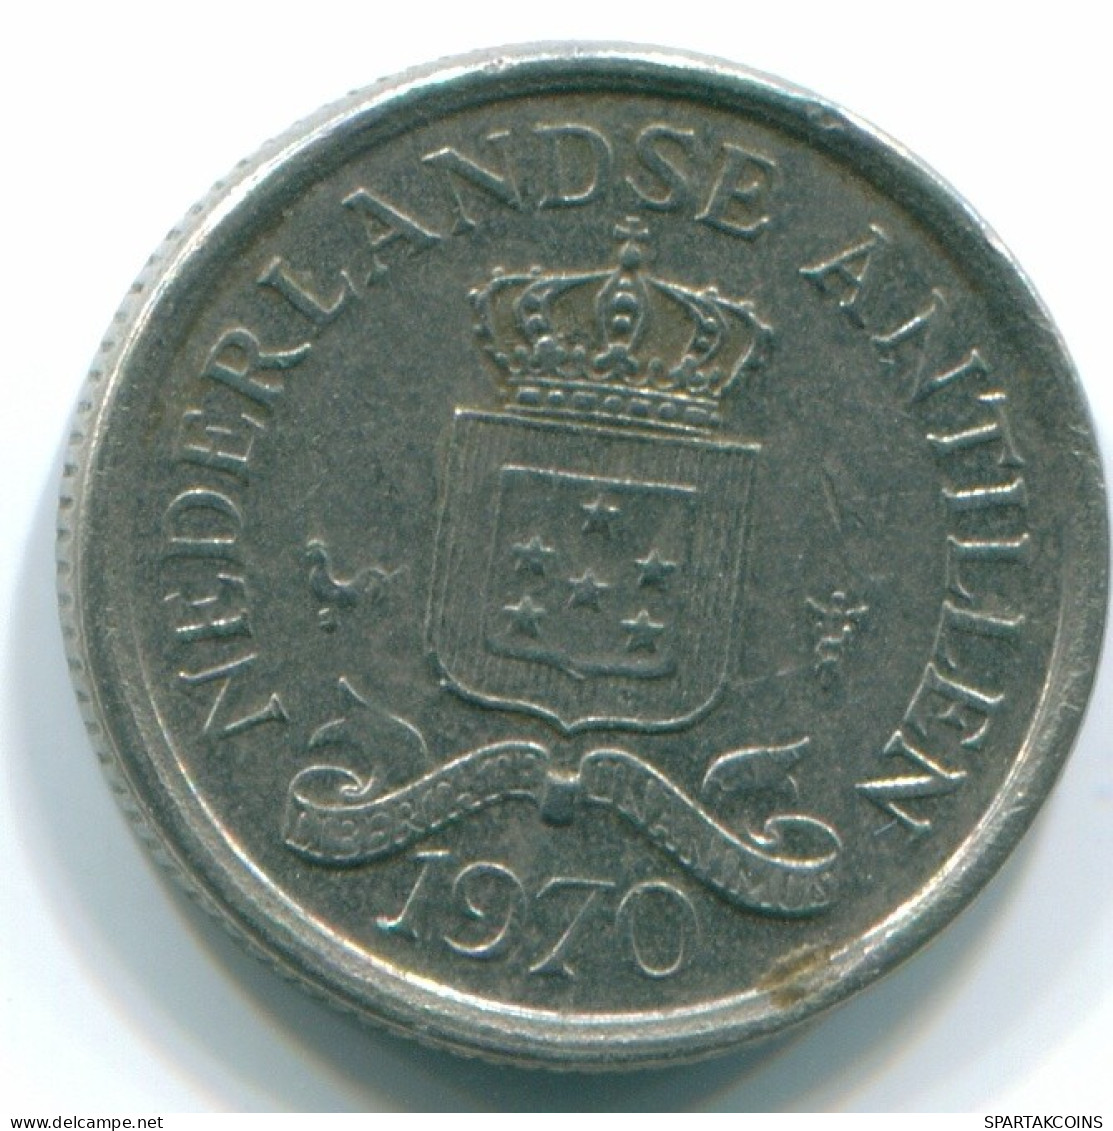 10 CENTS 1970 NETHERLANDS ANTILLES Nickel Colonial Coin #S13327.U.A - Niederländische Antillen